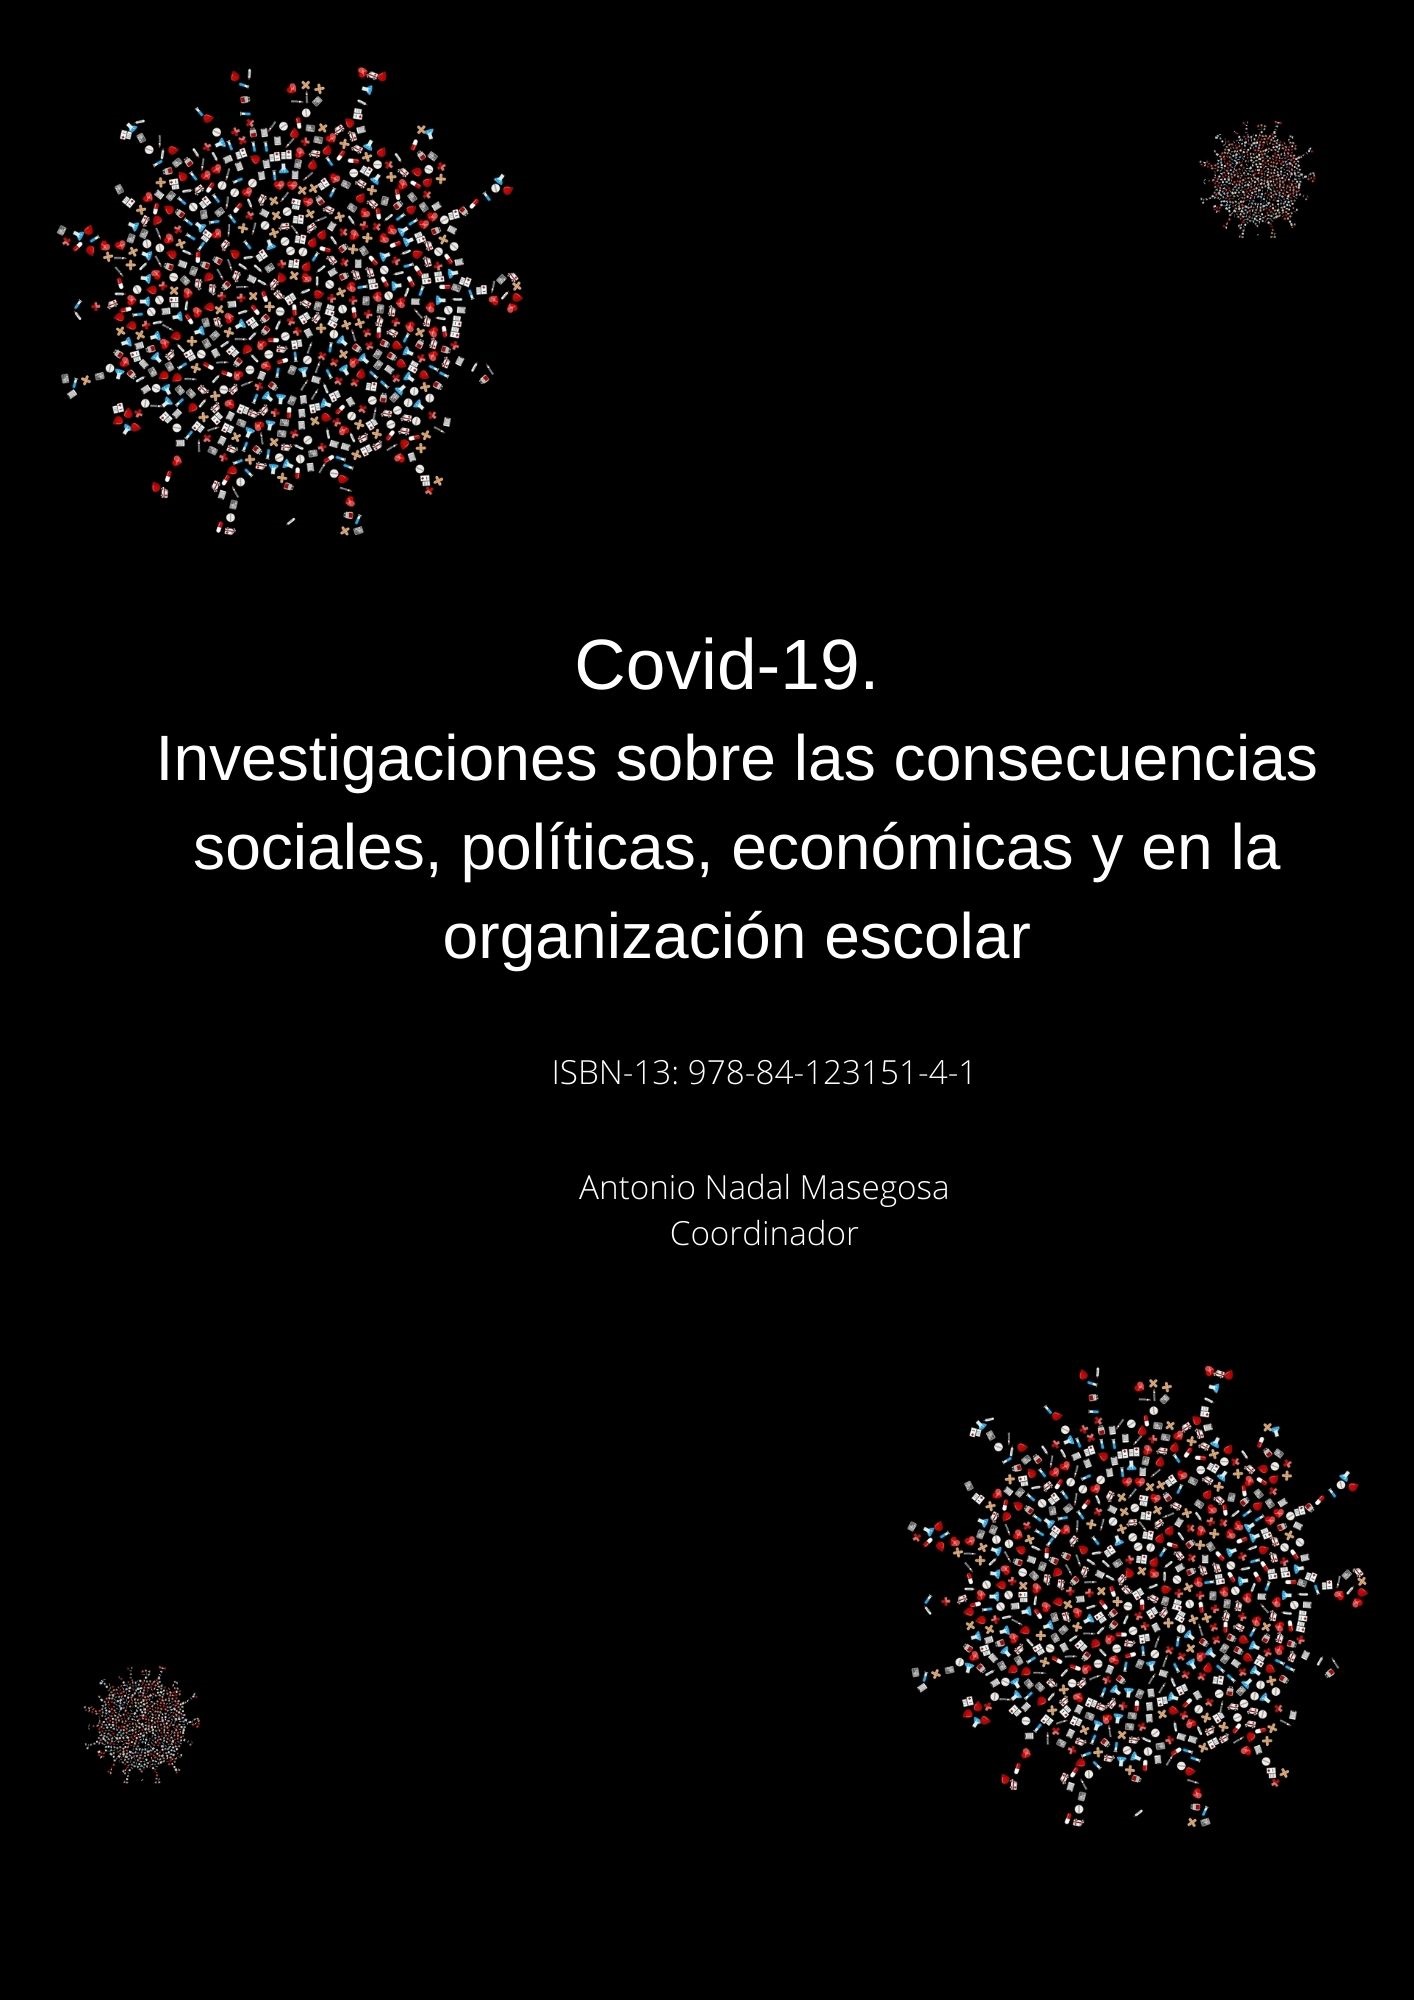 COVID-19. INVESTIGACIONES SOBRE LAS CONSECUENCIAS SOCIALES, POLÍTICAS, ECONÓMICAS Y EN LA ORGANIZACIÓN ESCOLAR